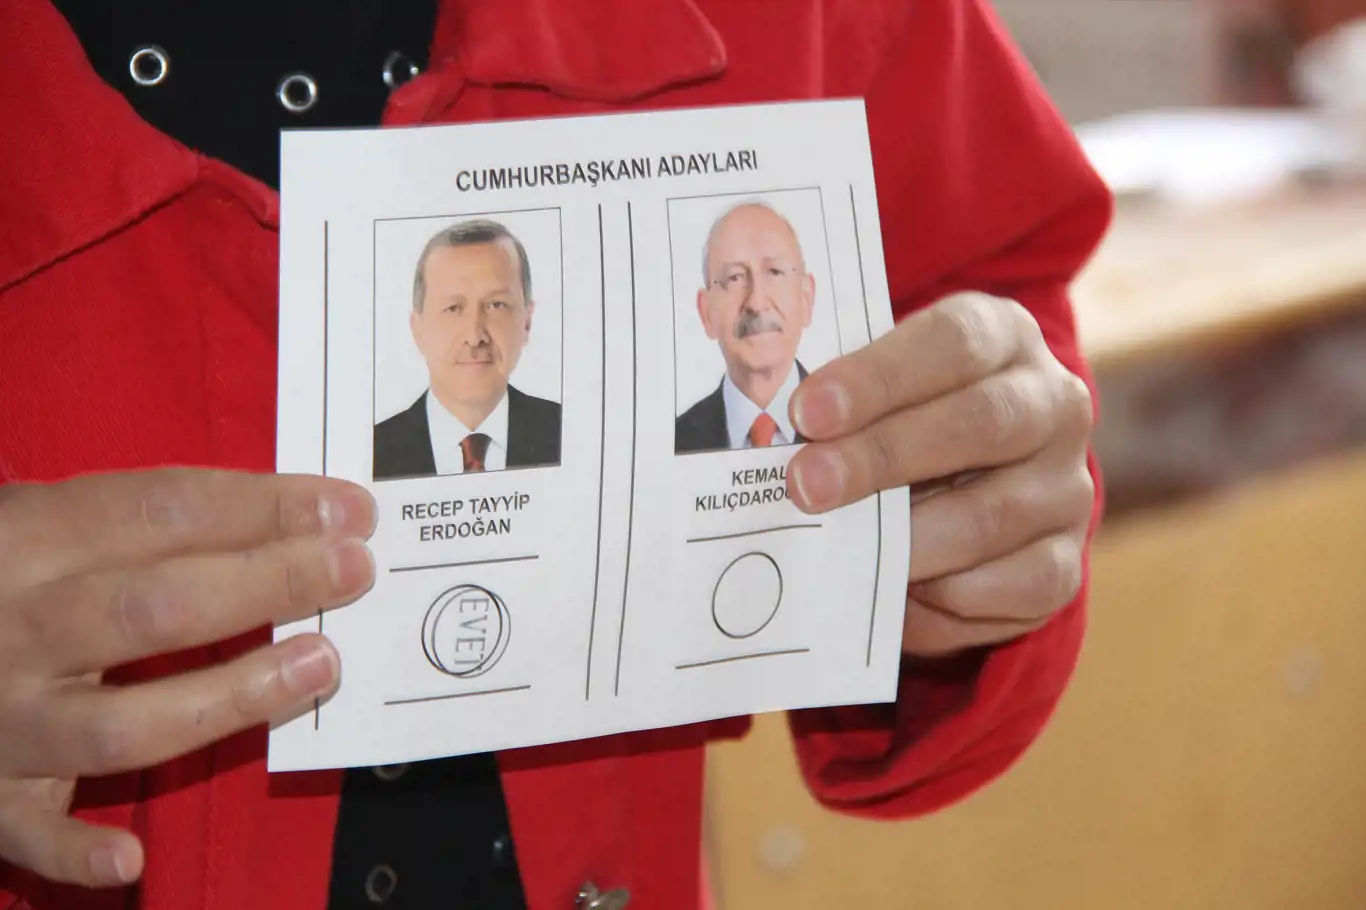 Diyarbakır'da sandıklar açıldı oy sayımına başlandı